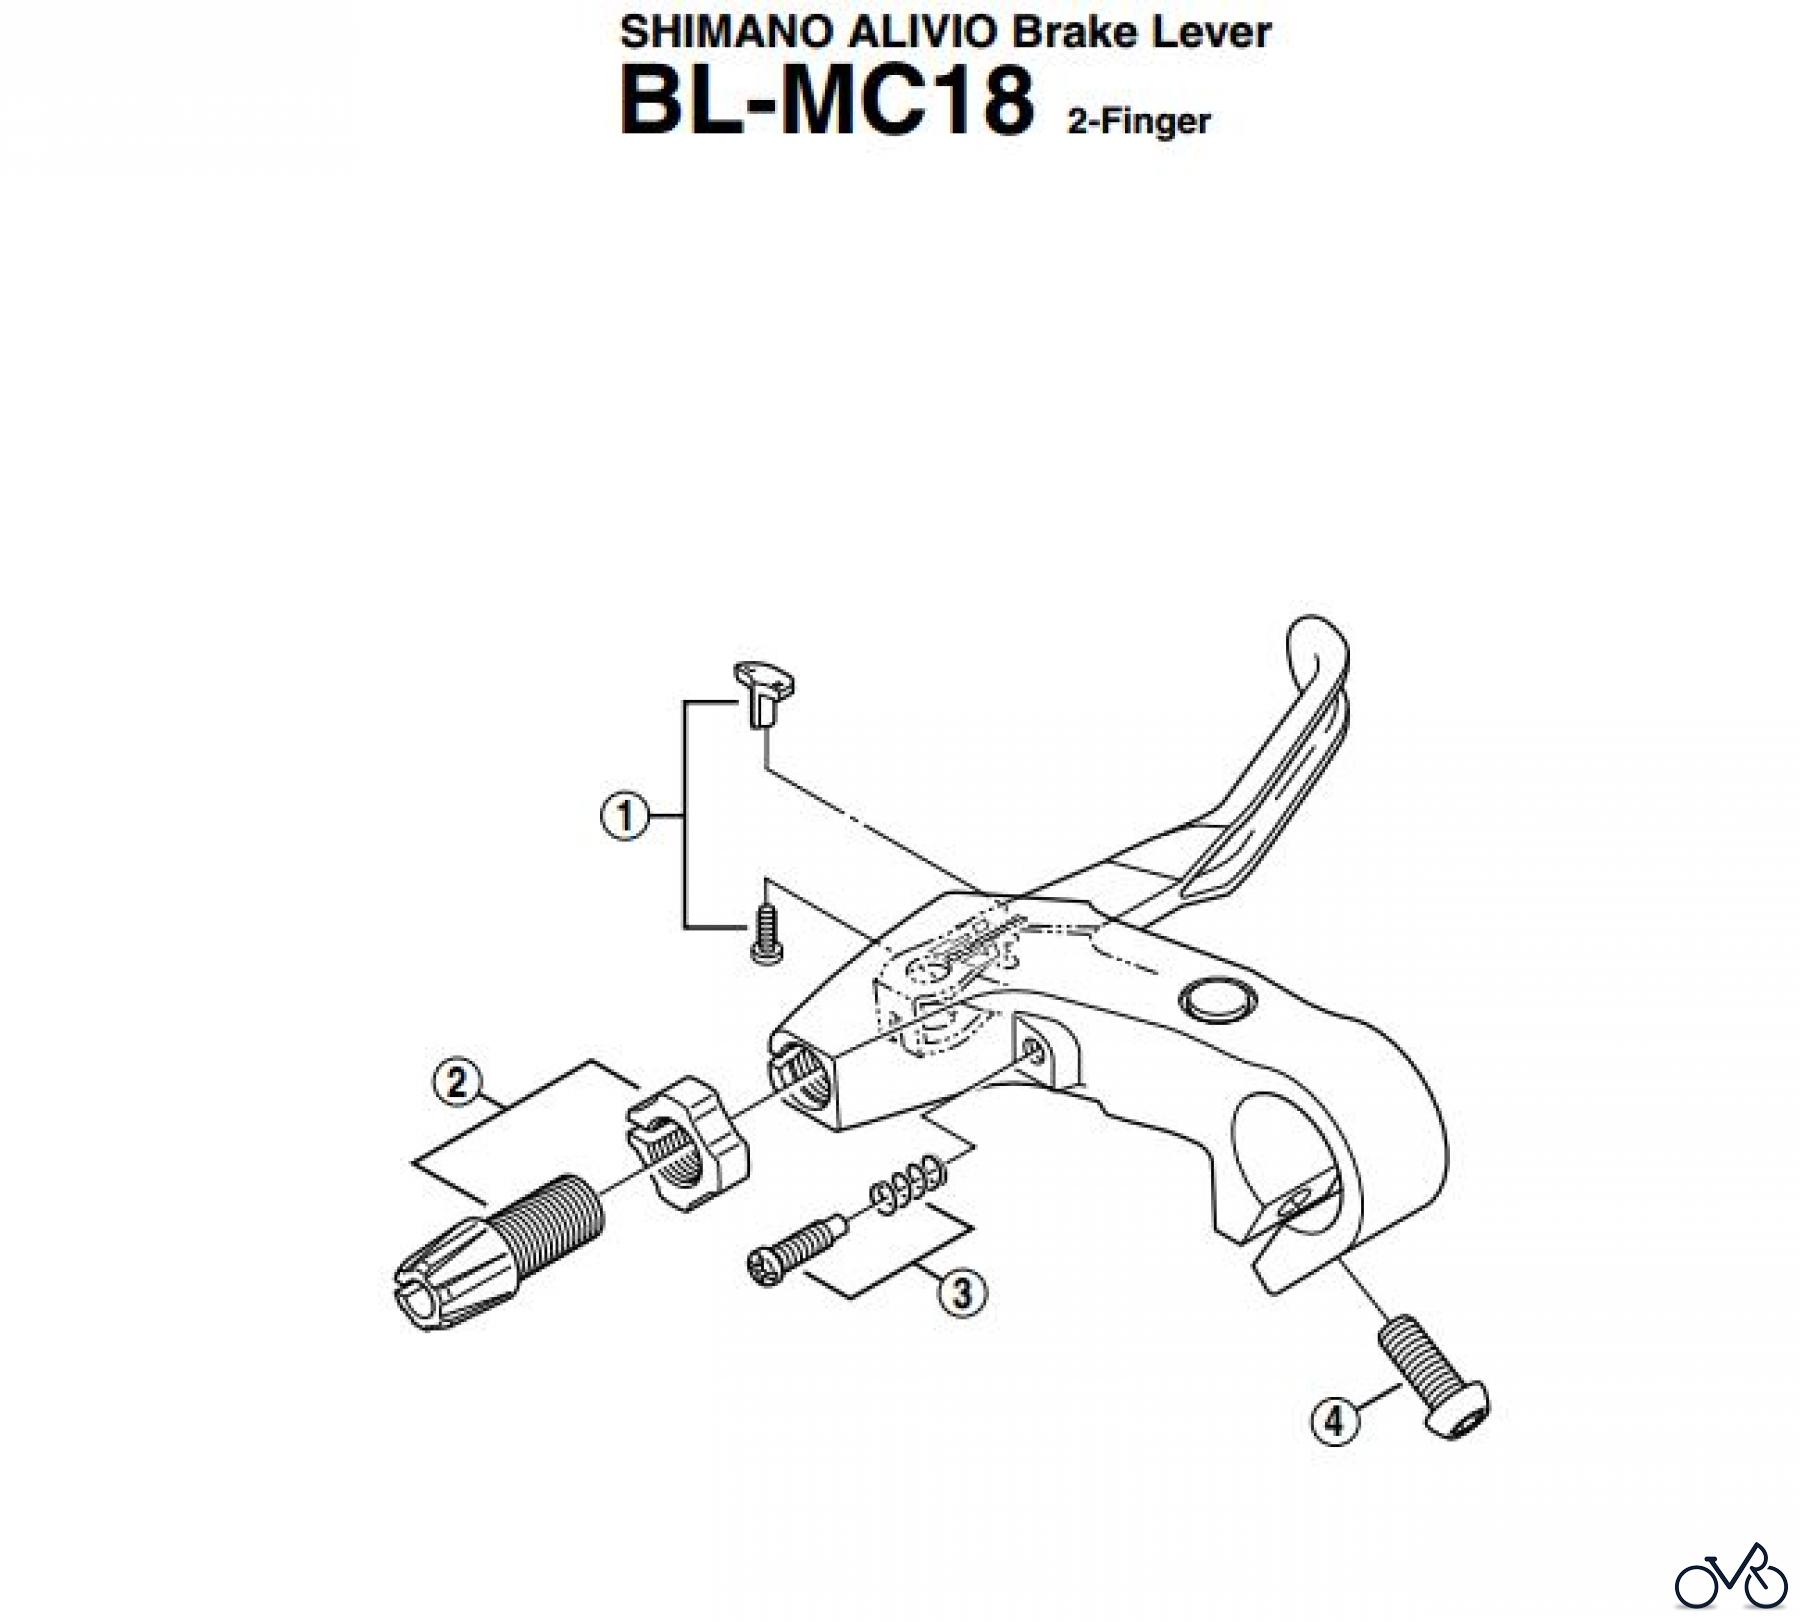  Shimano BL Brake Lever - Bremshebel BL-MC18